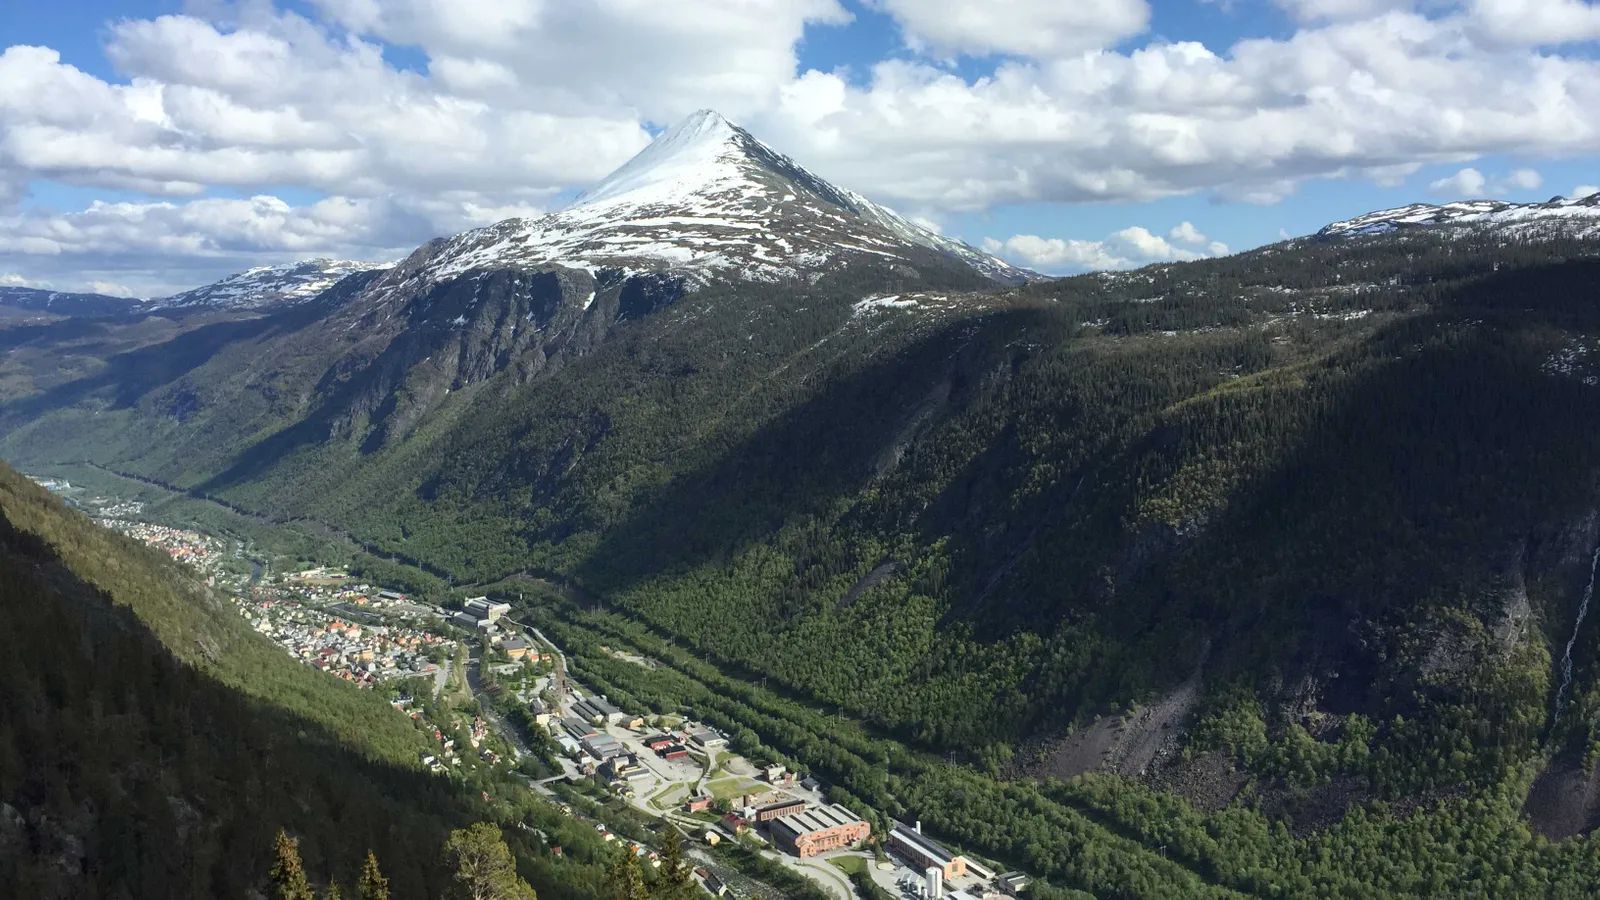 Norway town of Rjukan